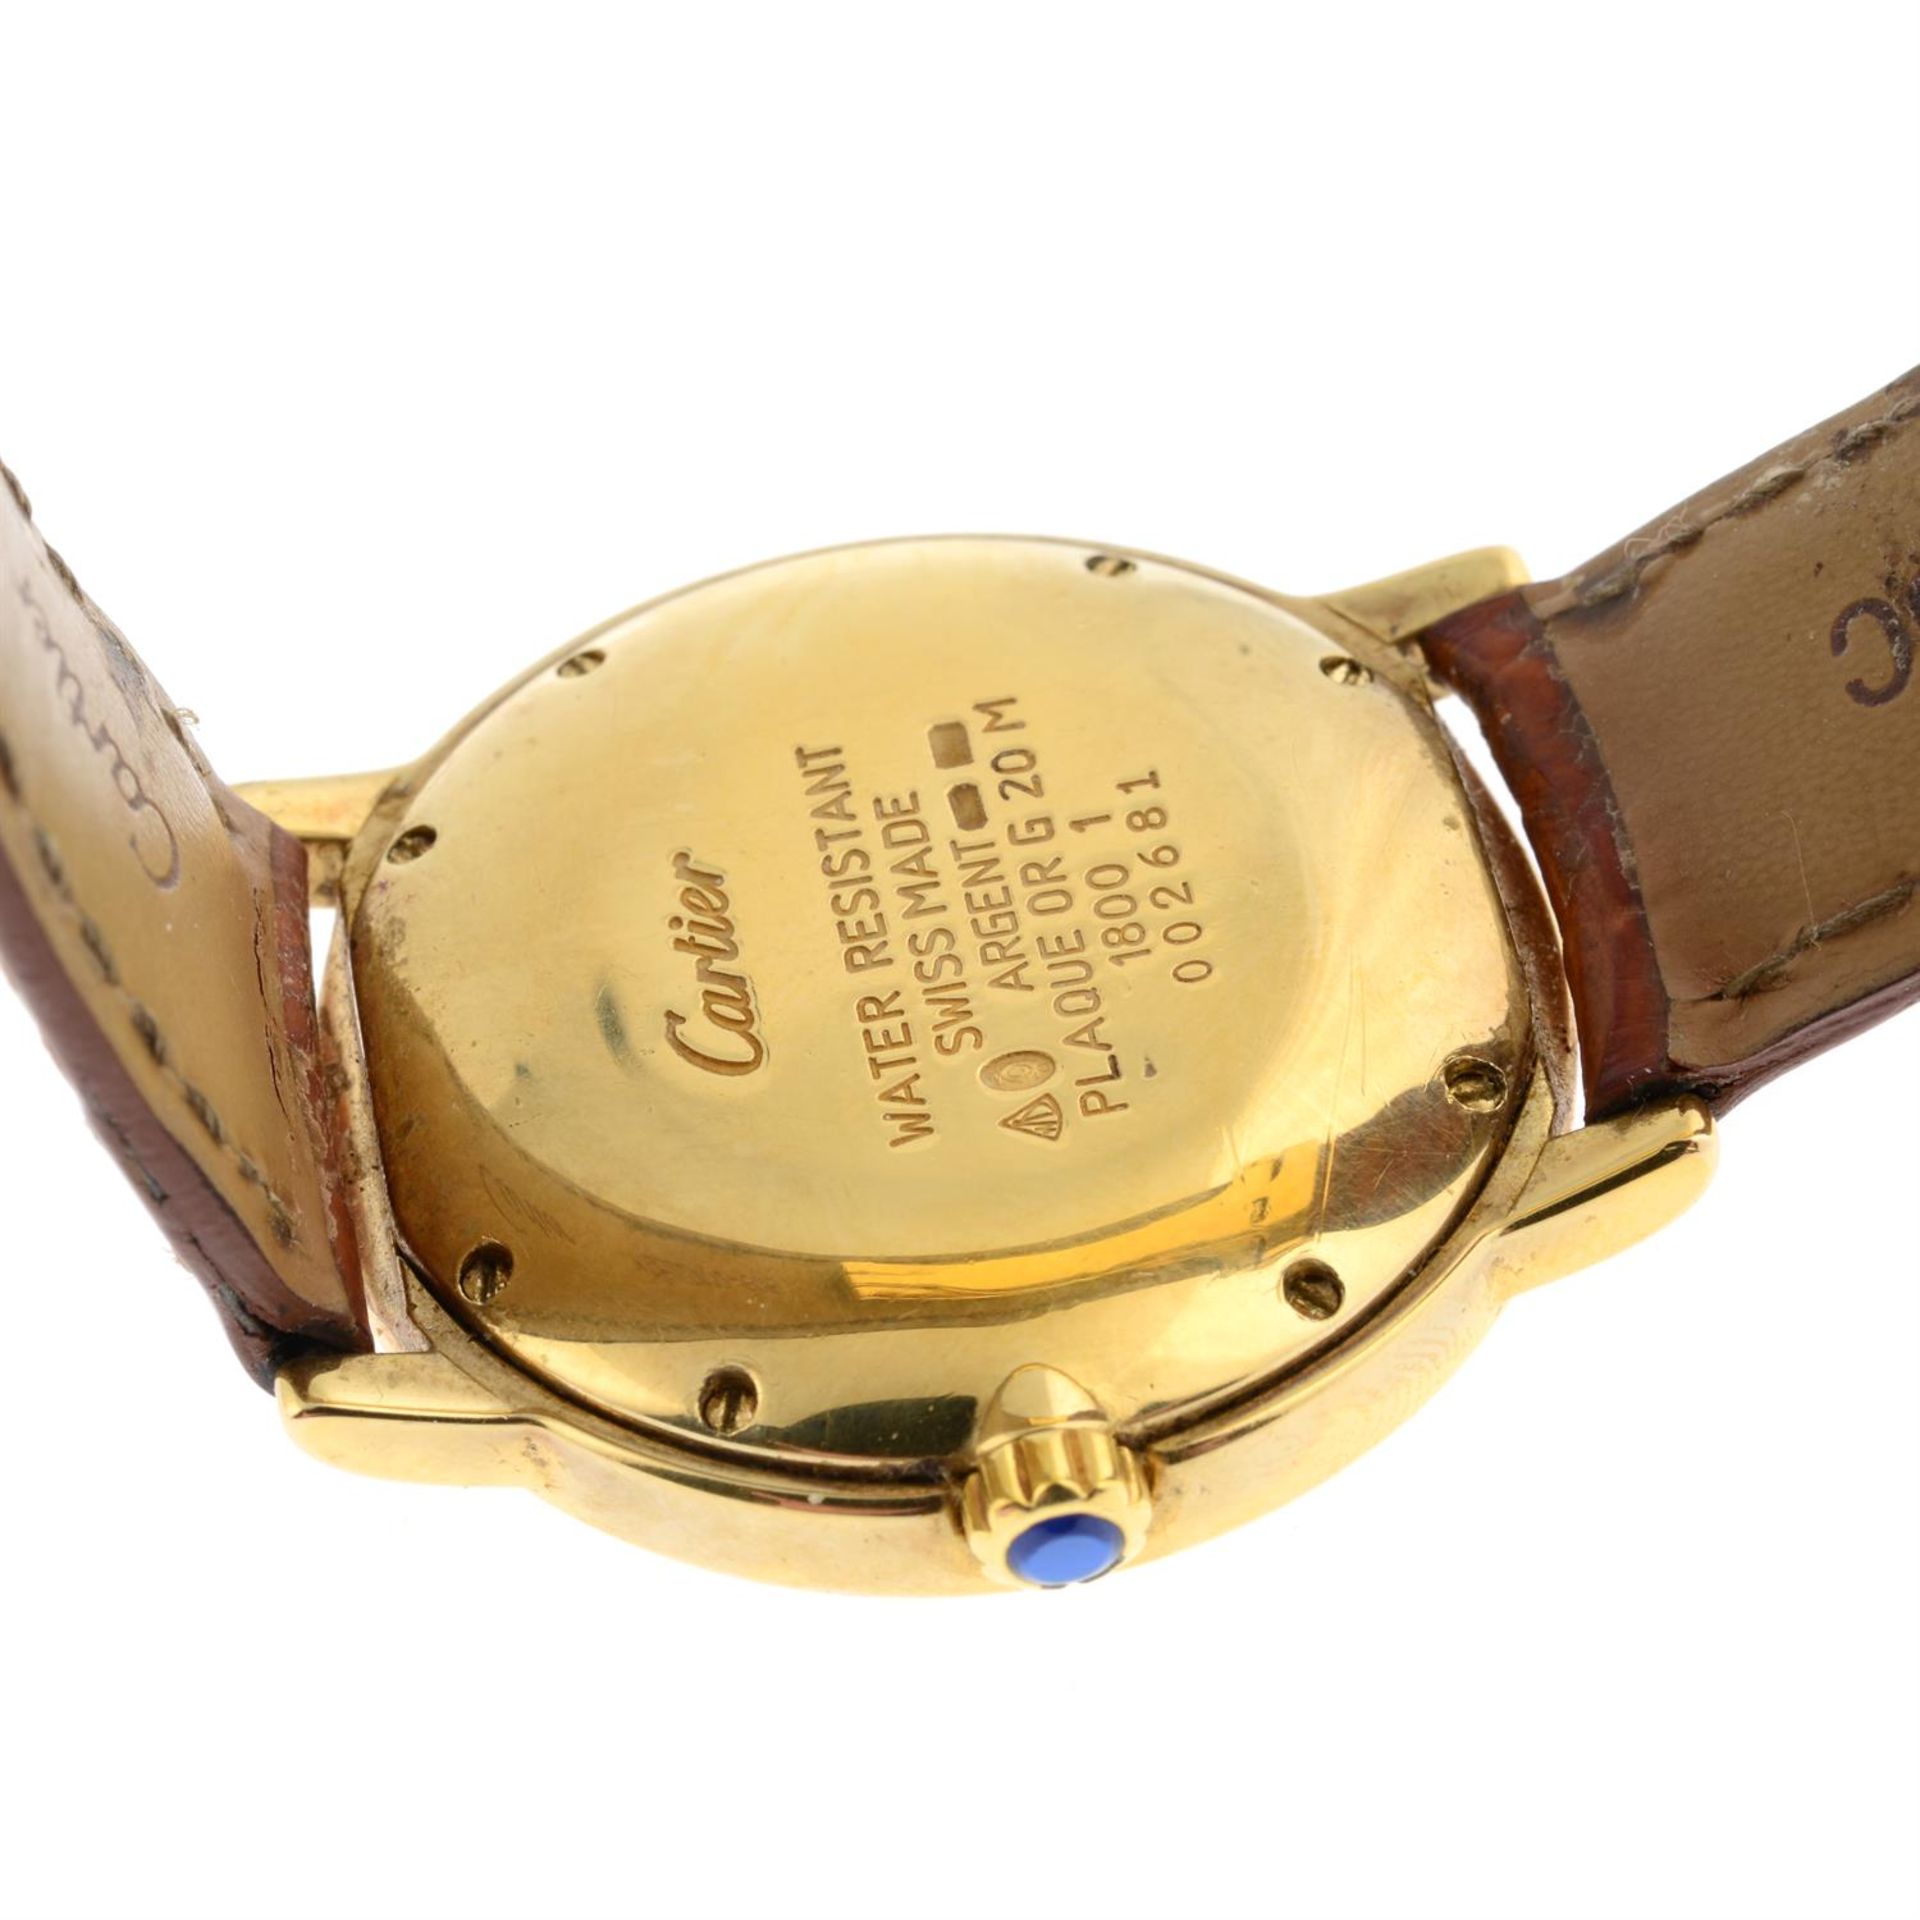 CARTIER - a gold plated Must de Cartier wrist watch, 32mm. - Image 2 of 5